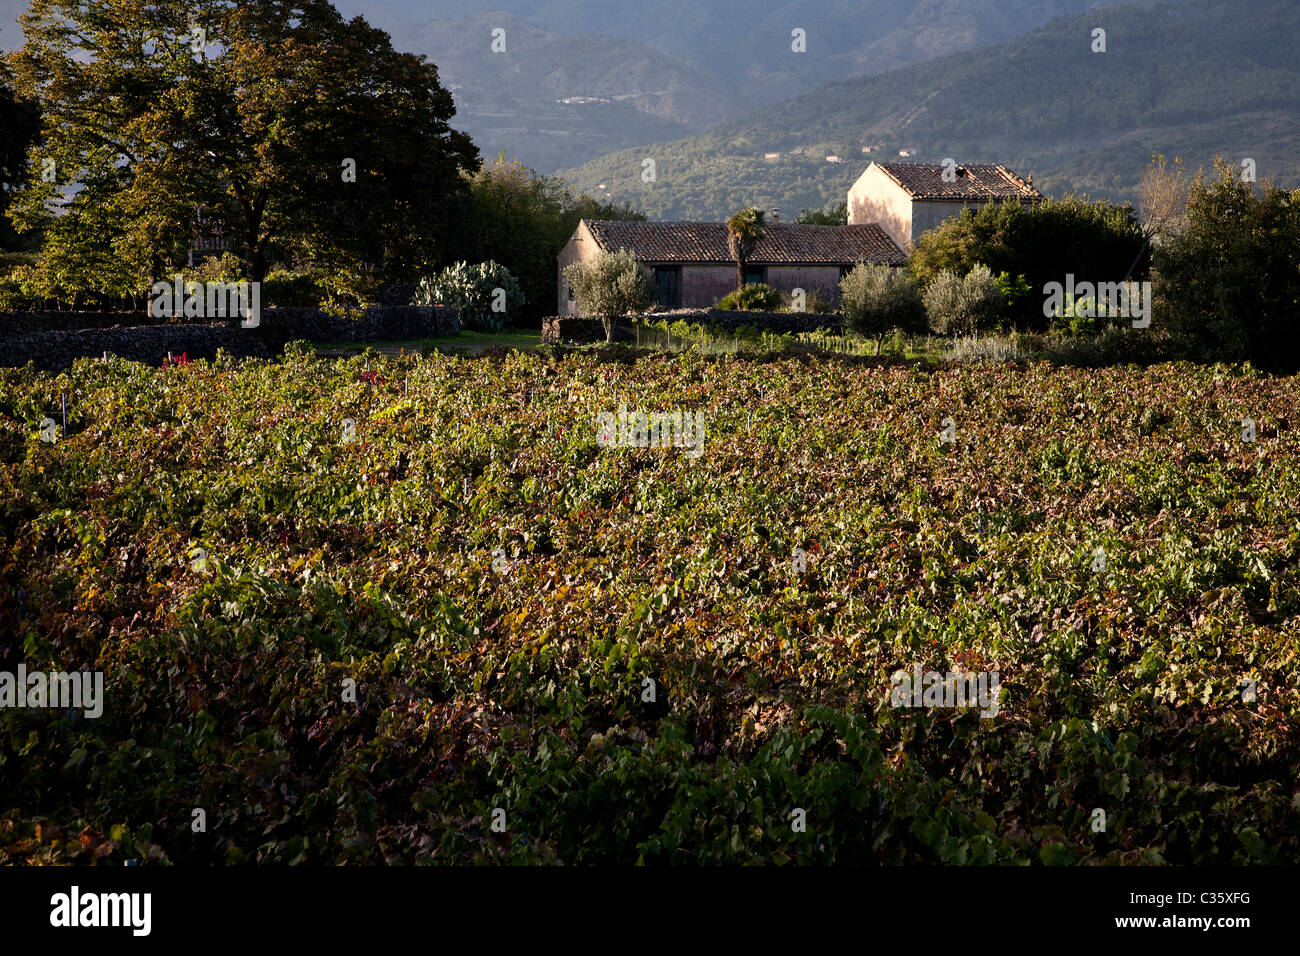 Vineyards, Castiglione di Sicilia, Sicily, Italy Stock Photo